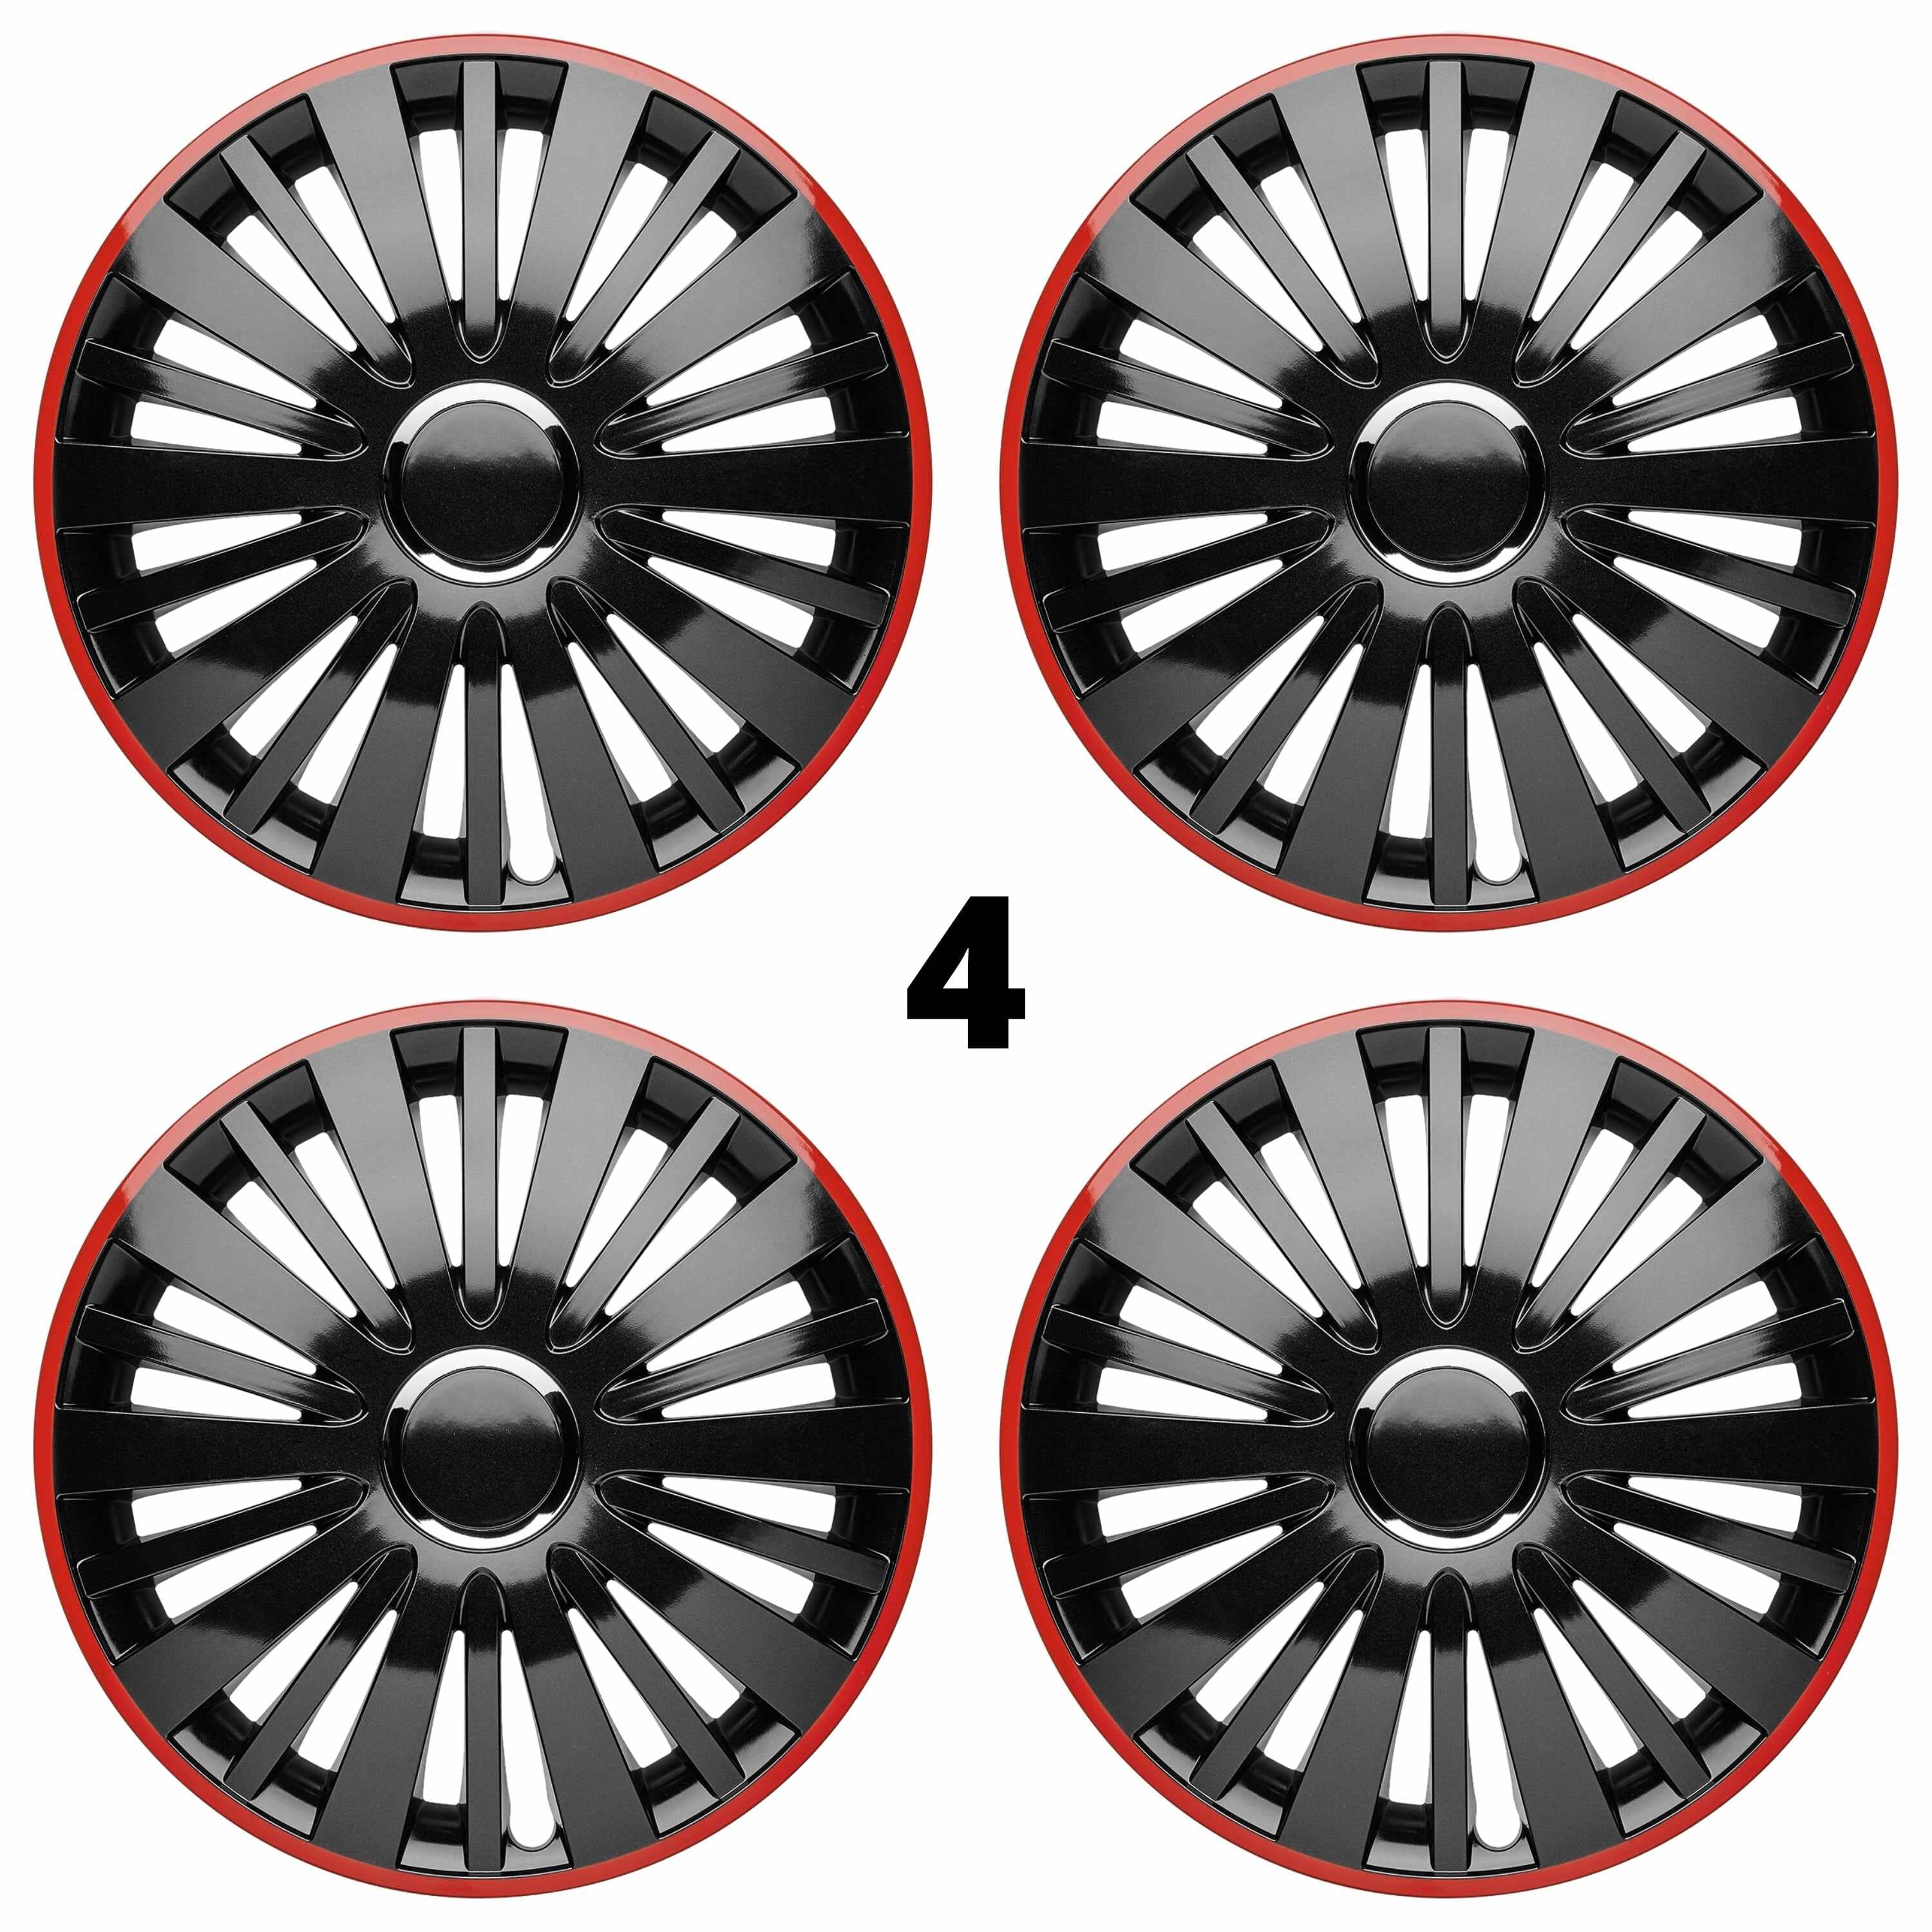 Radkappen silber-schwarz oder schwarz-rot Radzierblenden Falcon Twilight 13-16 Zoll